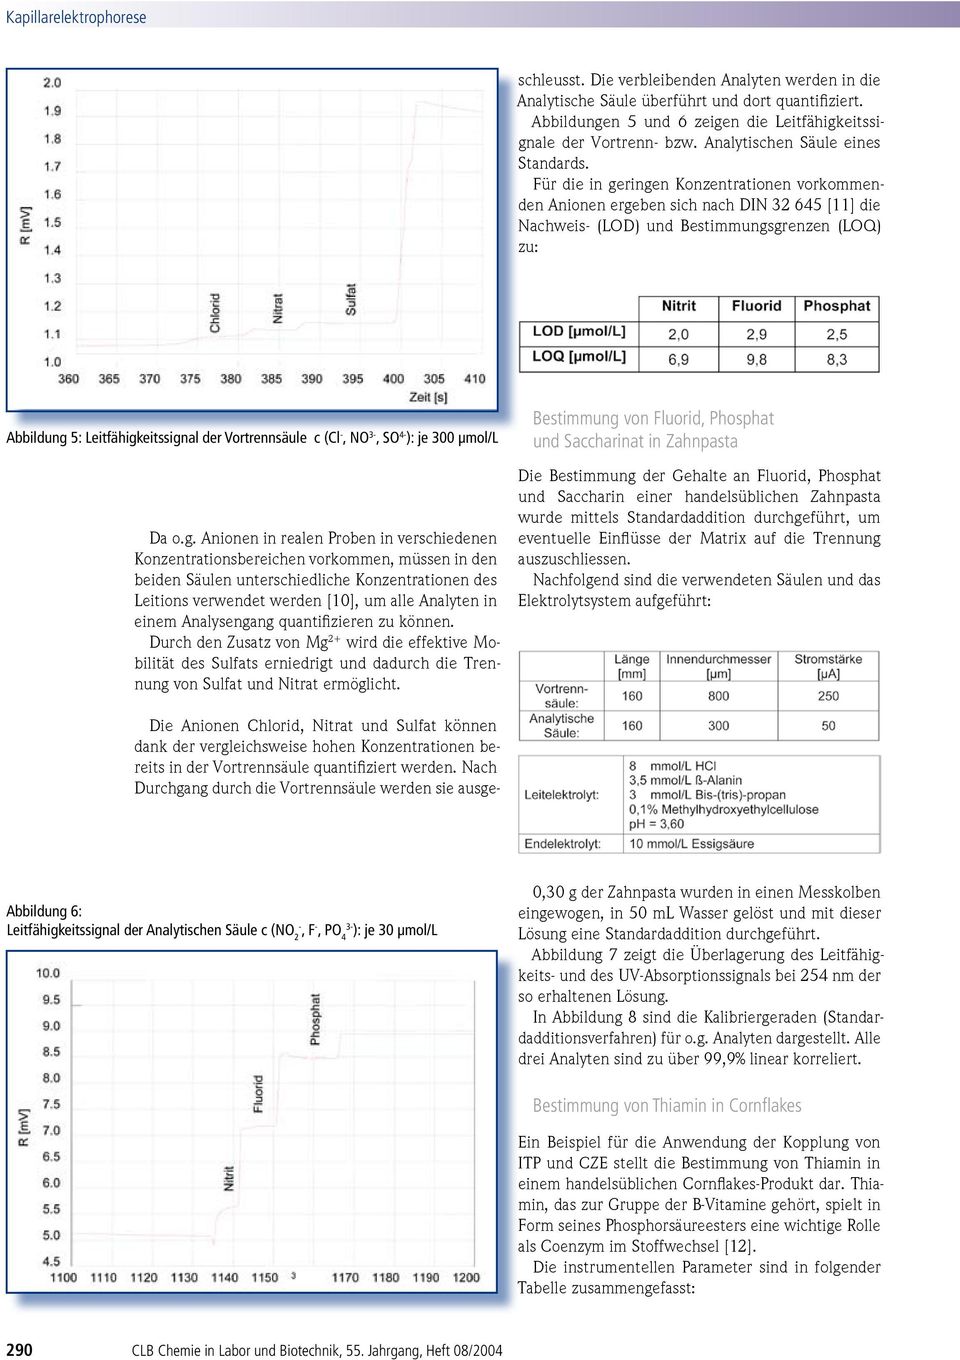 Abbildungen 5 und 6 zeigen die Leitfähigkeitssignale der Vortrenn- bzw. Analytischen Säule eines Standards.